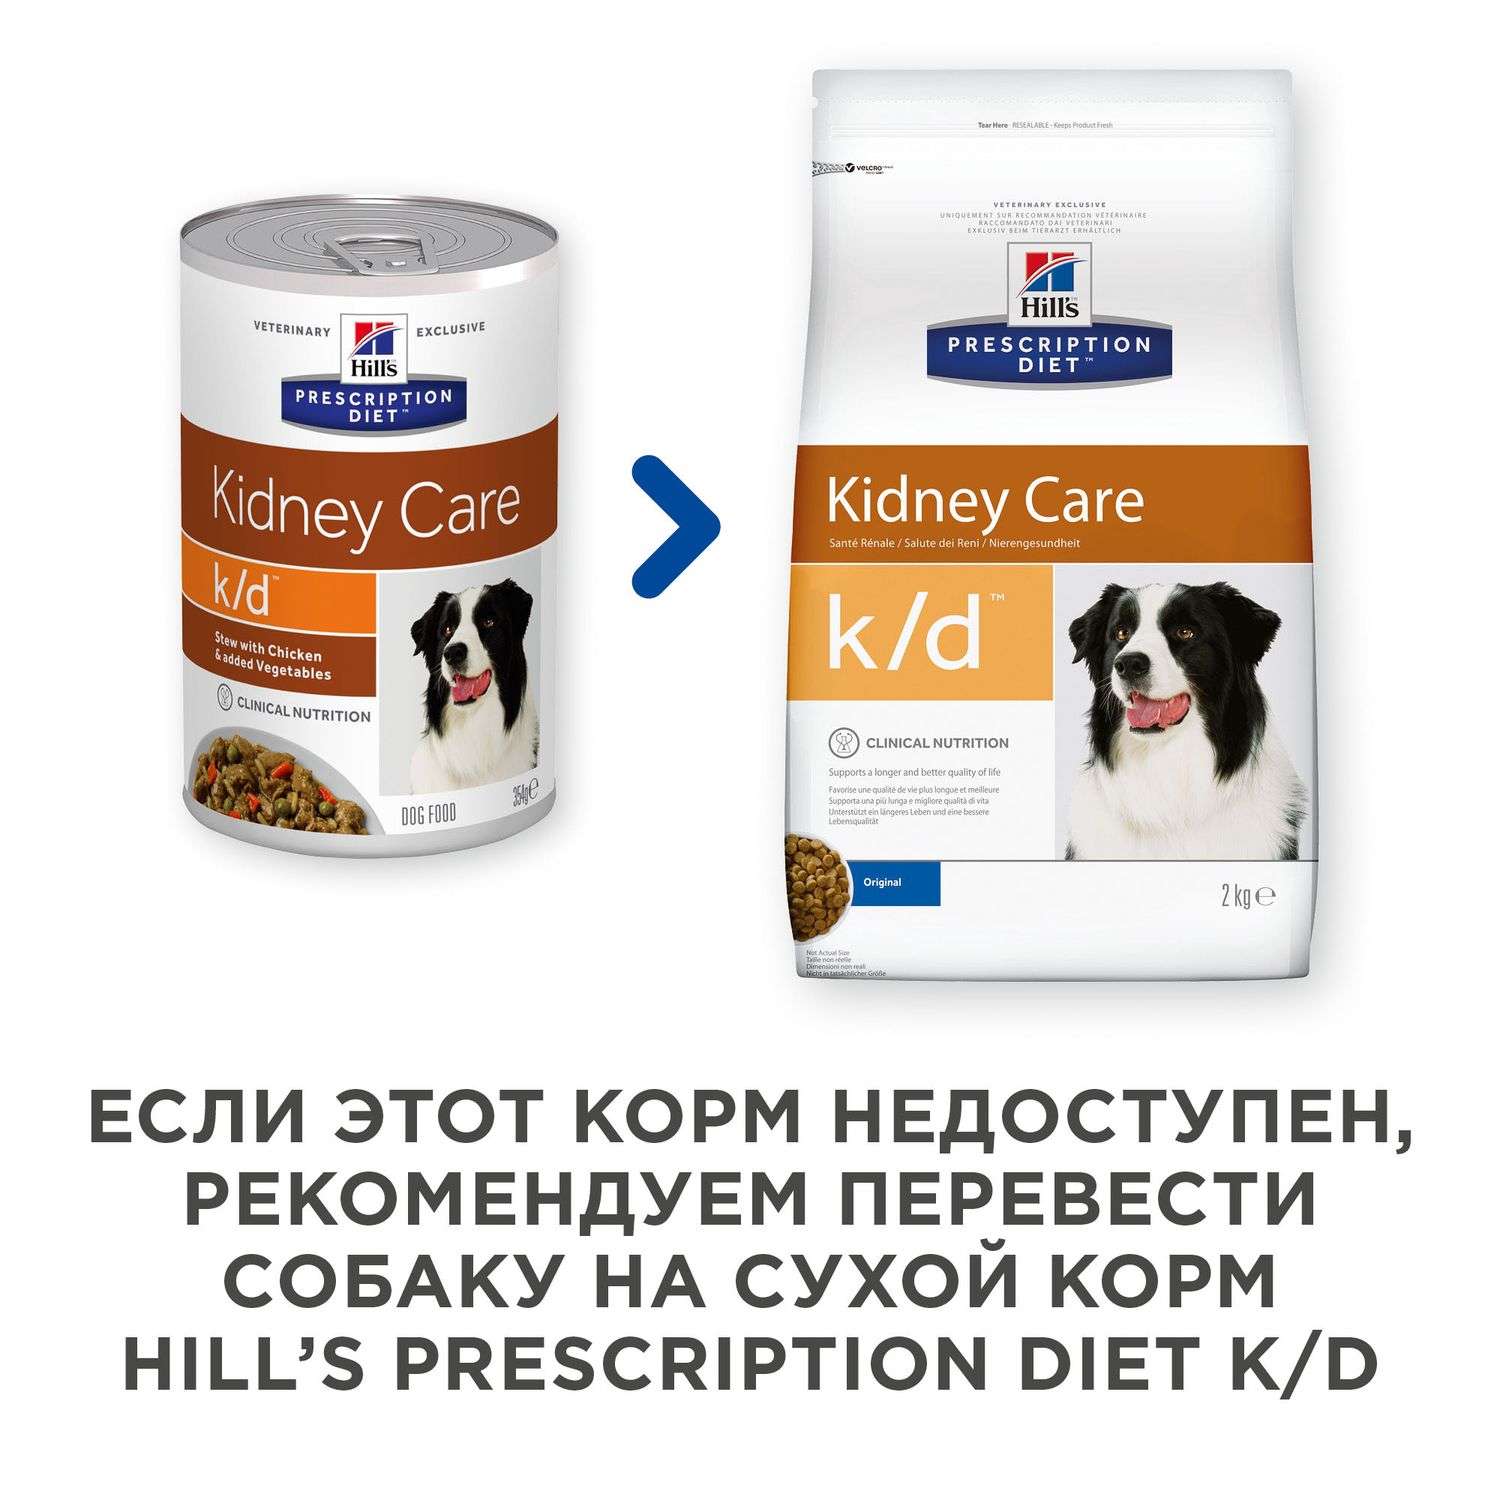 Корм для собак HILLS 354г Prescription Diet k/d при лечении заболеваний почек рагу с курицей и добавлением овощей - фото 3